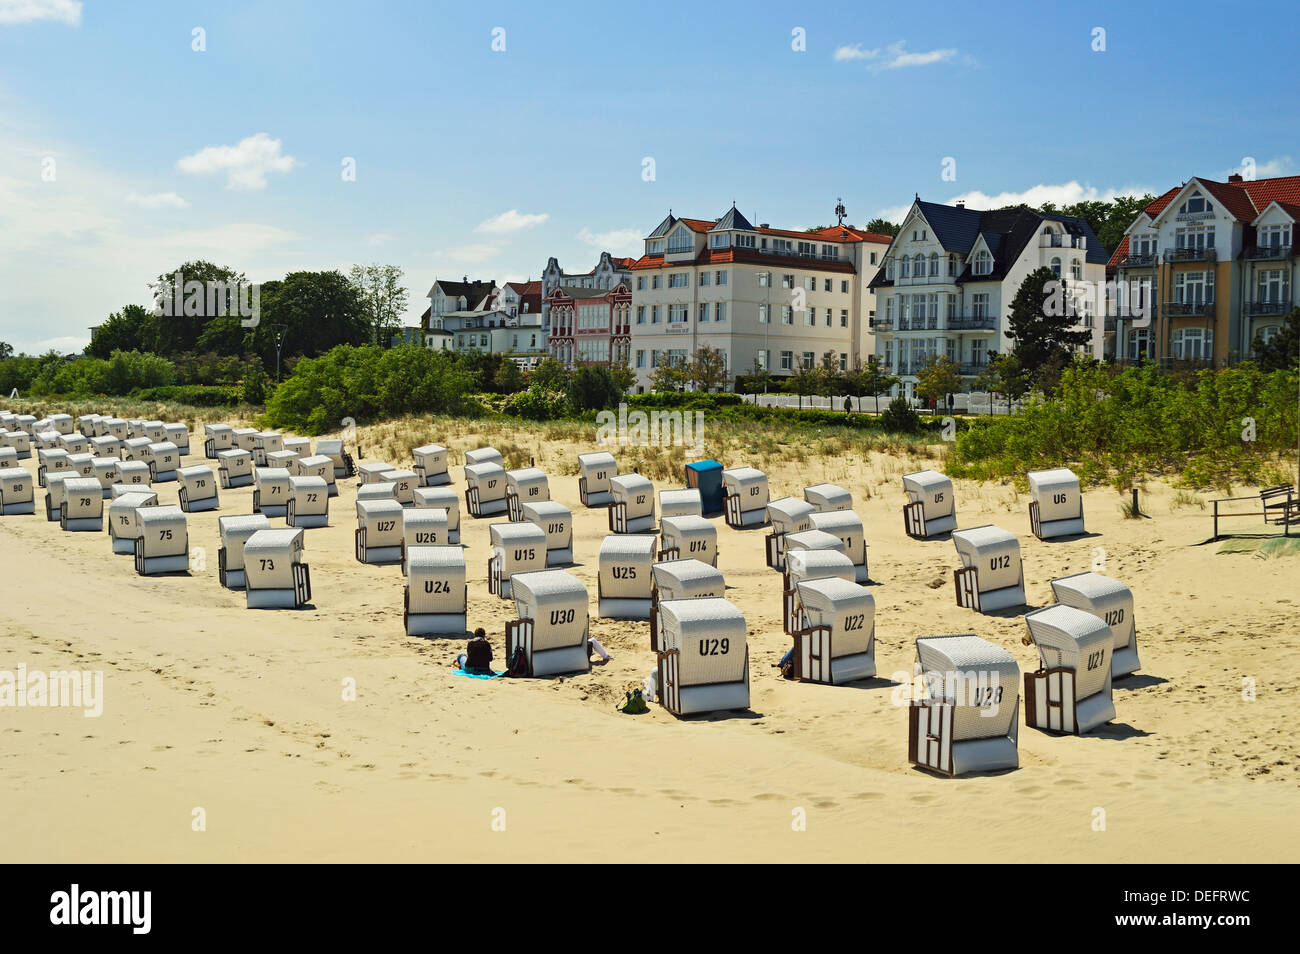 Chaises de plage, Bansin, Usedom, Mecklenburg-Vorpommern, Allemagne, Mer baltique, Europe Banque D'Images